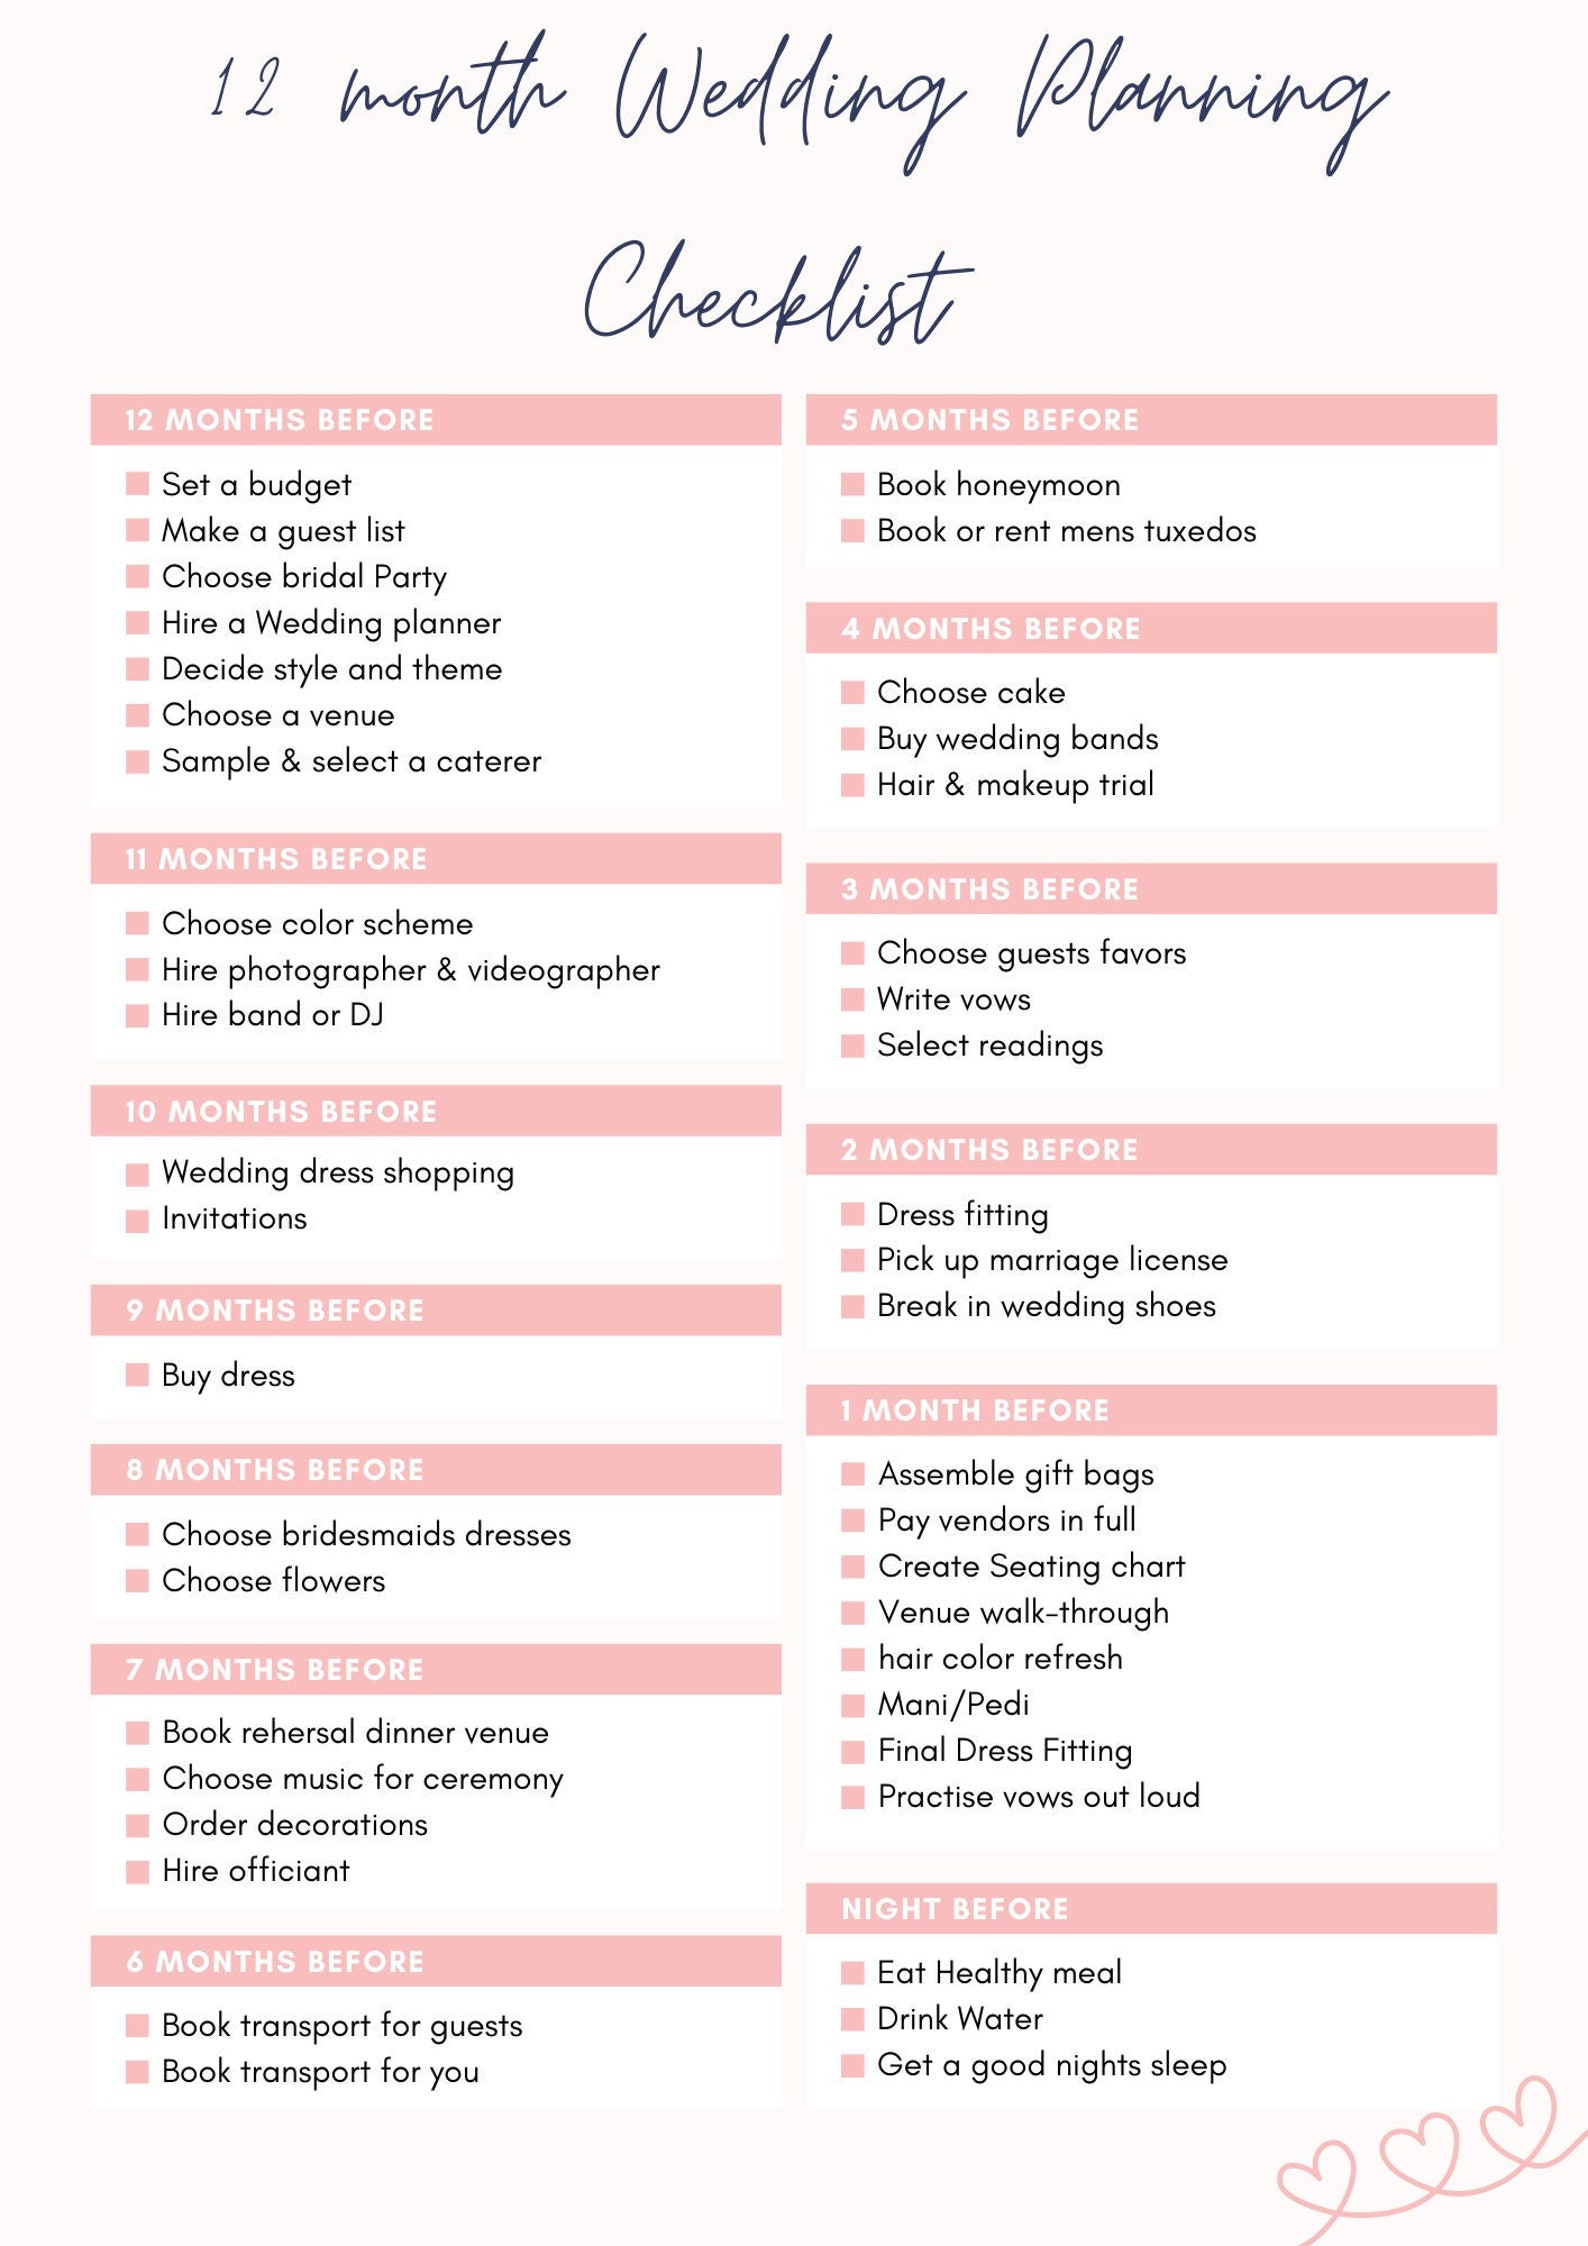 Wedding Planning Checklist Checklist 12 Month Wedding Planning - Etsy